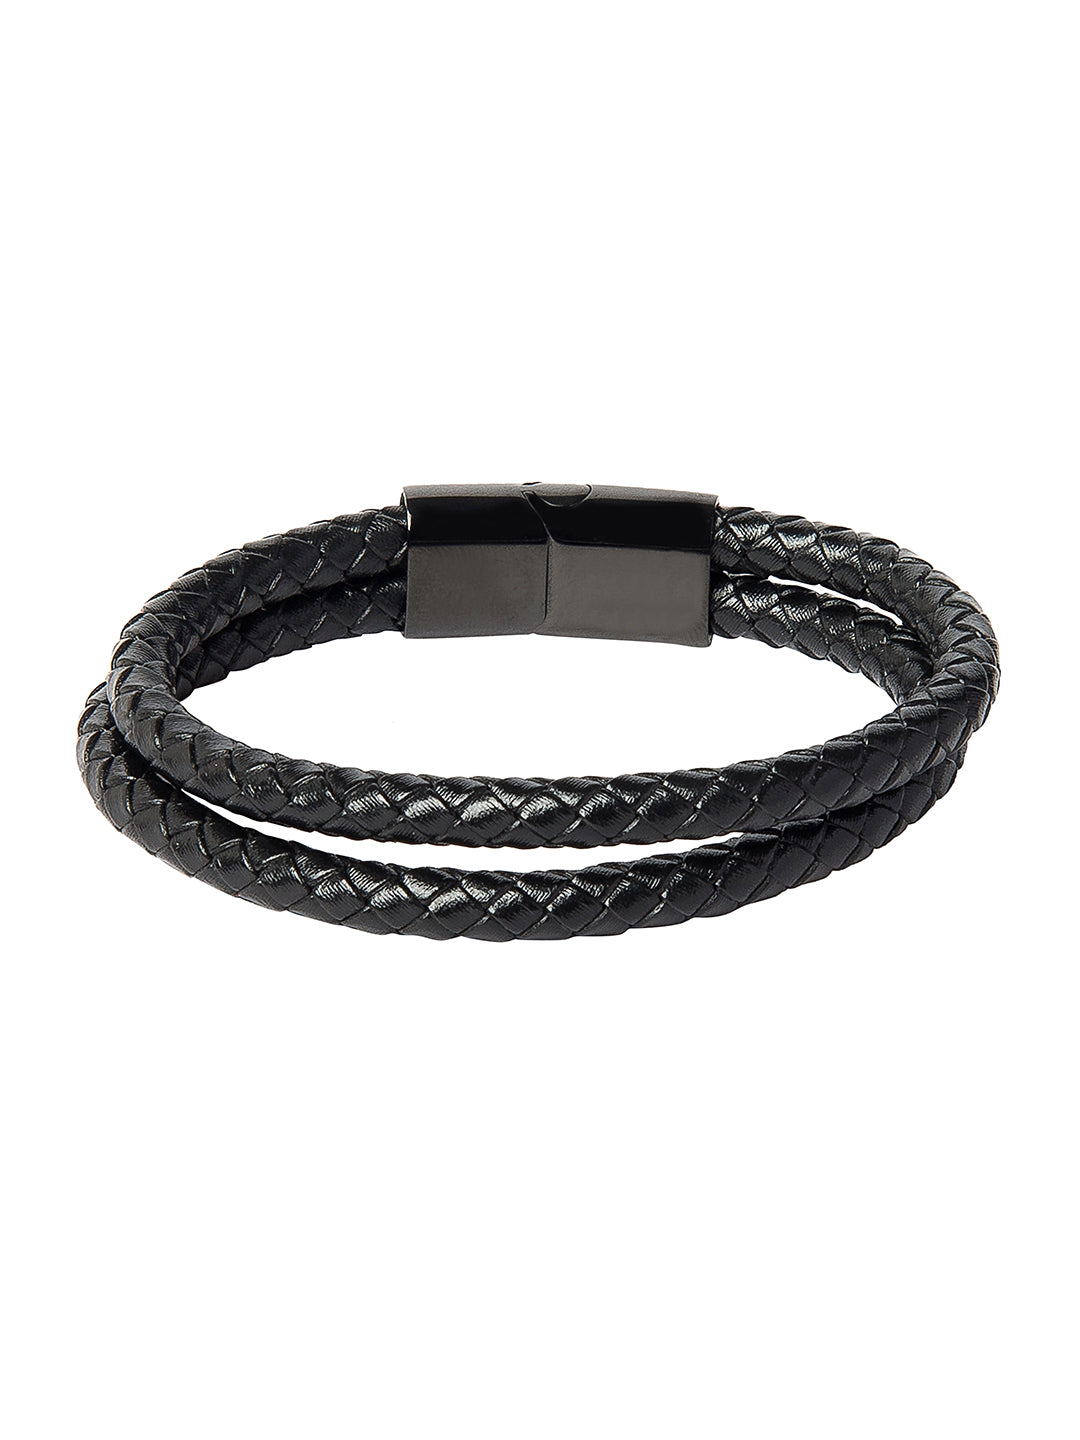 Men's Stainless Steel Black Leather Bracelet Hand-Braided - SSLB141